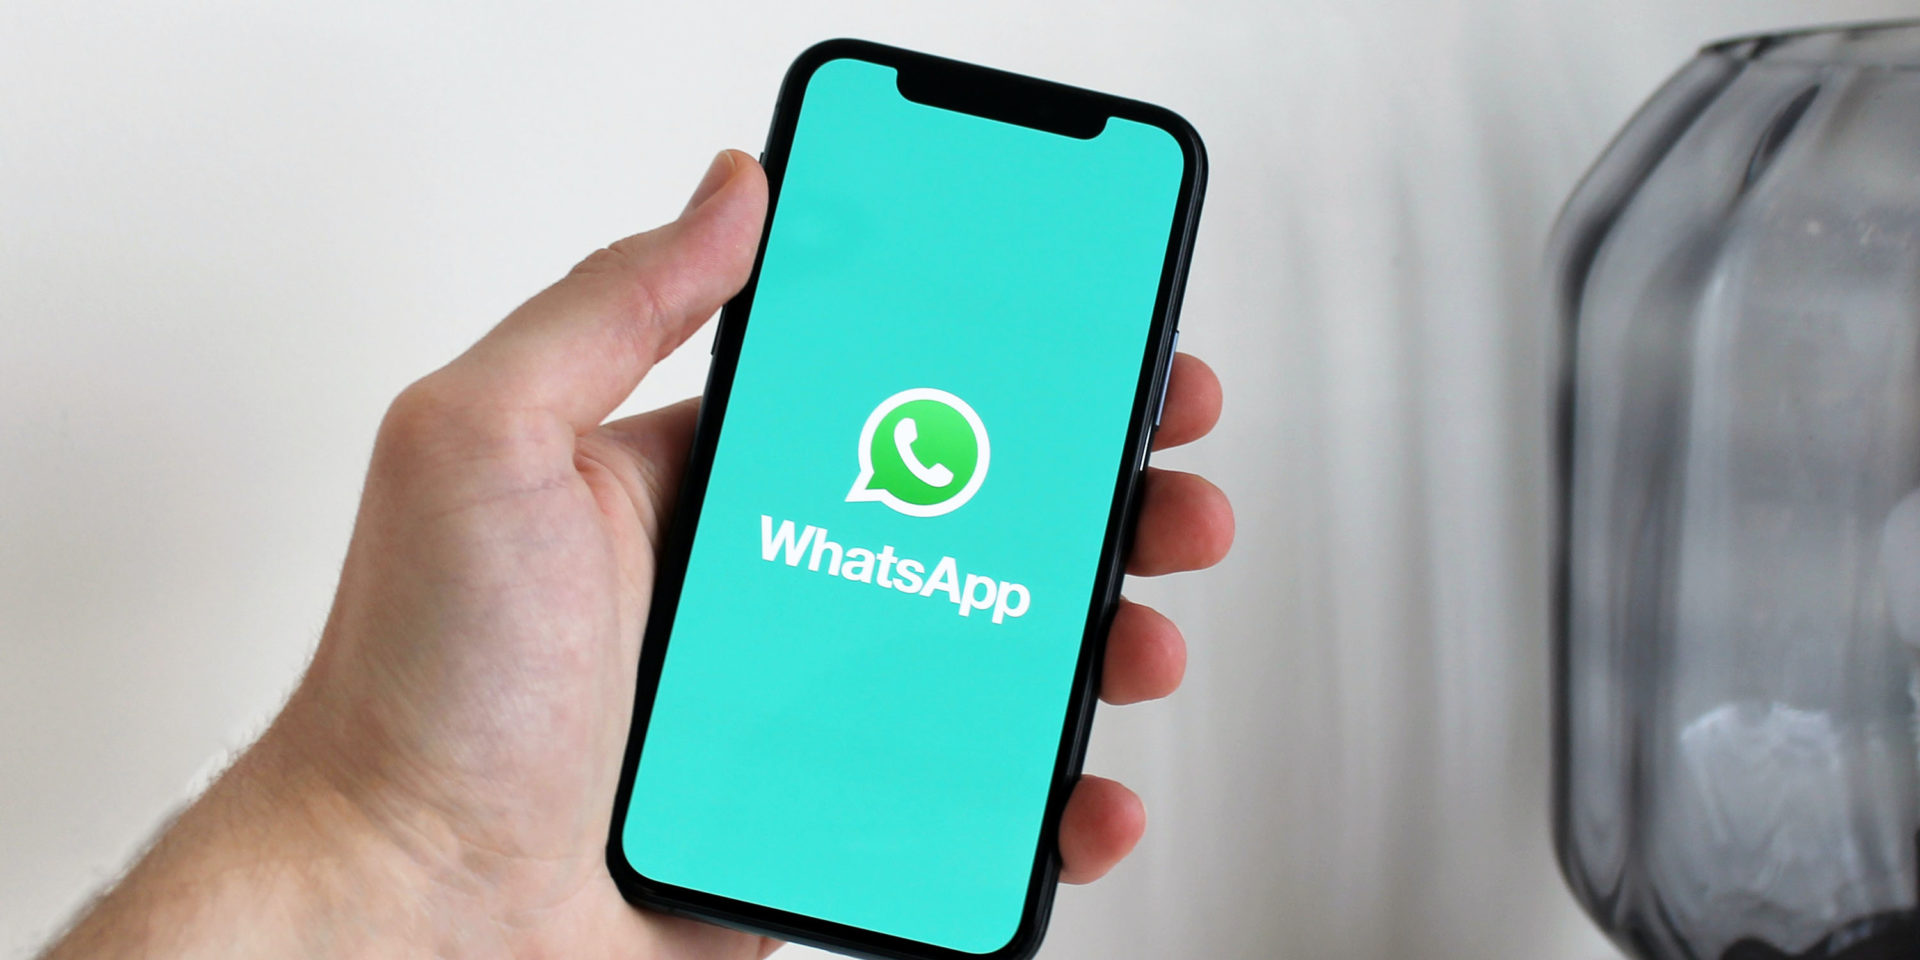 WhatsApp บน iOS เตรียมเพิ่มฟีเจอร์ถอดเสียงข้อความเสียง กดข้ามไปที่ข้อความนั้นได้เลย